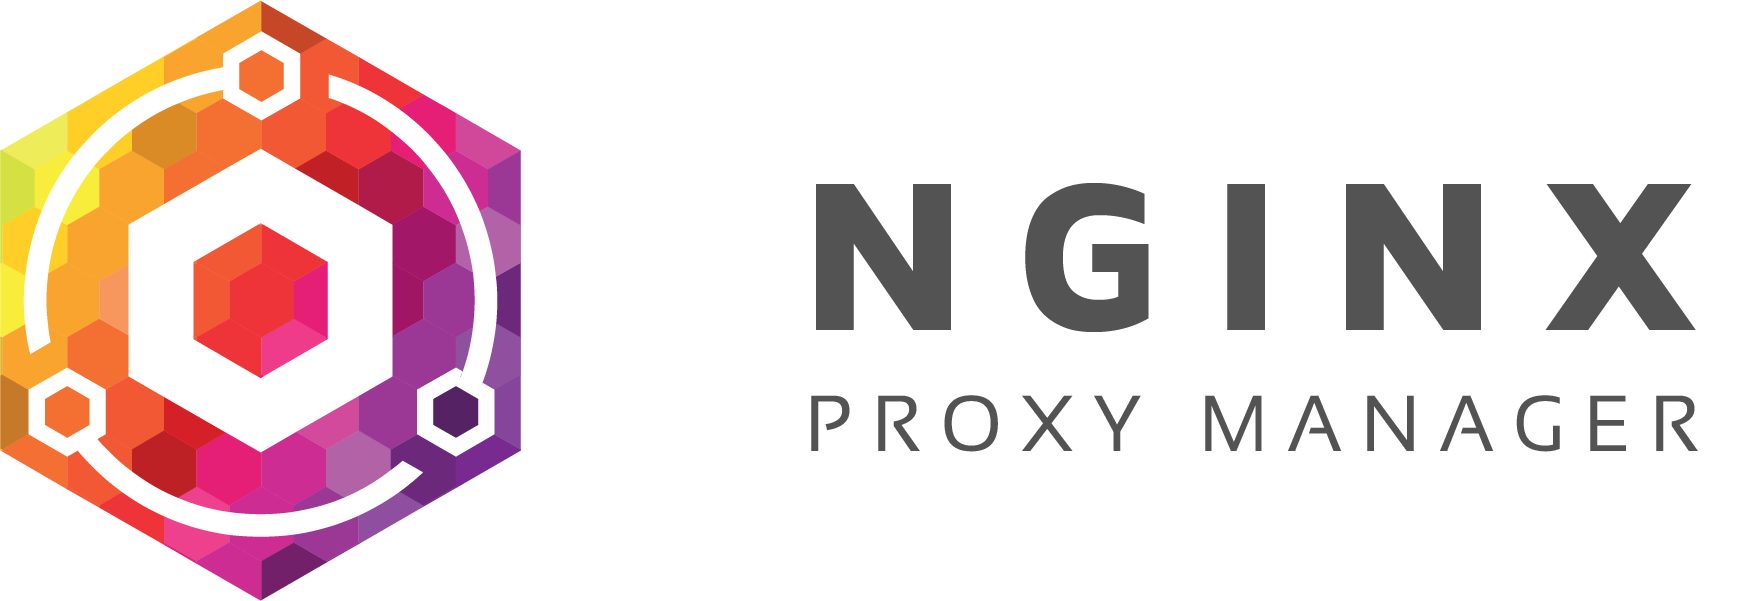 Nginx Proxy Managerで簡単ルーティング+SSL証明書管理